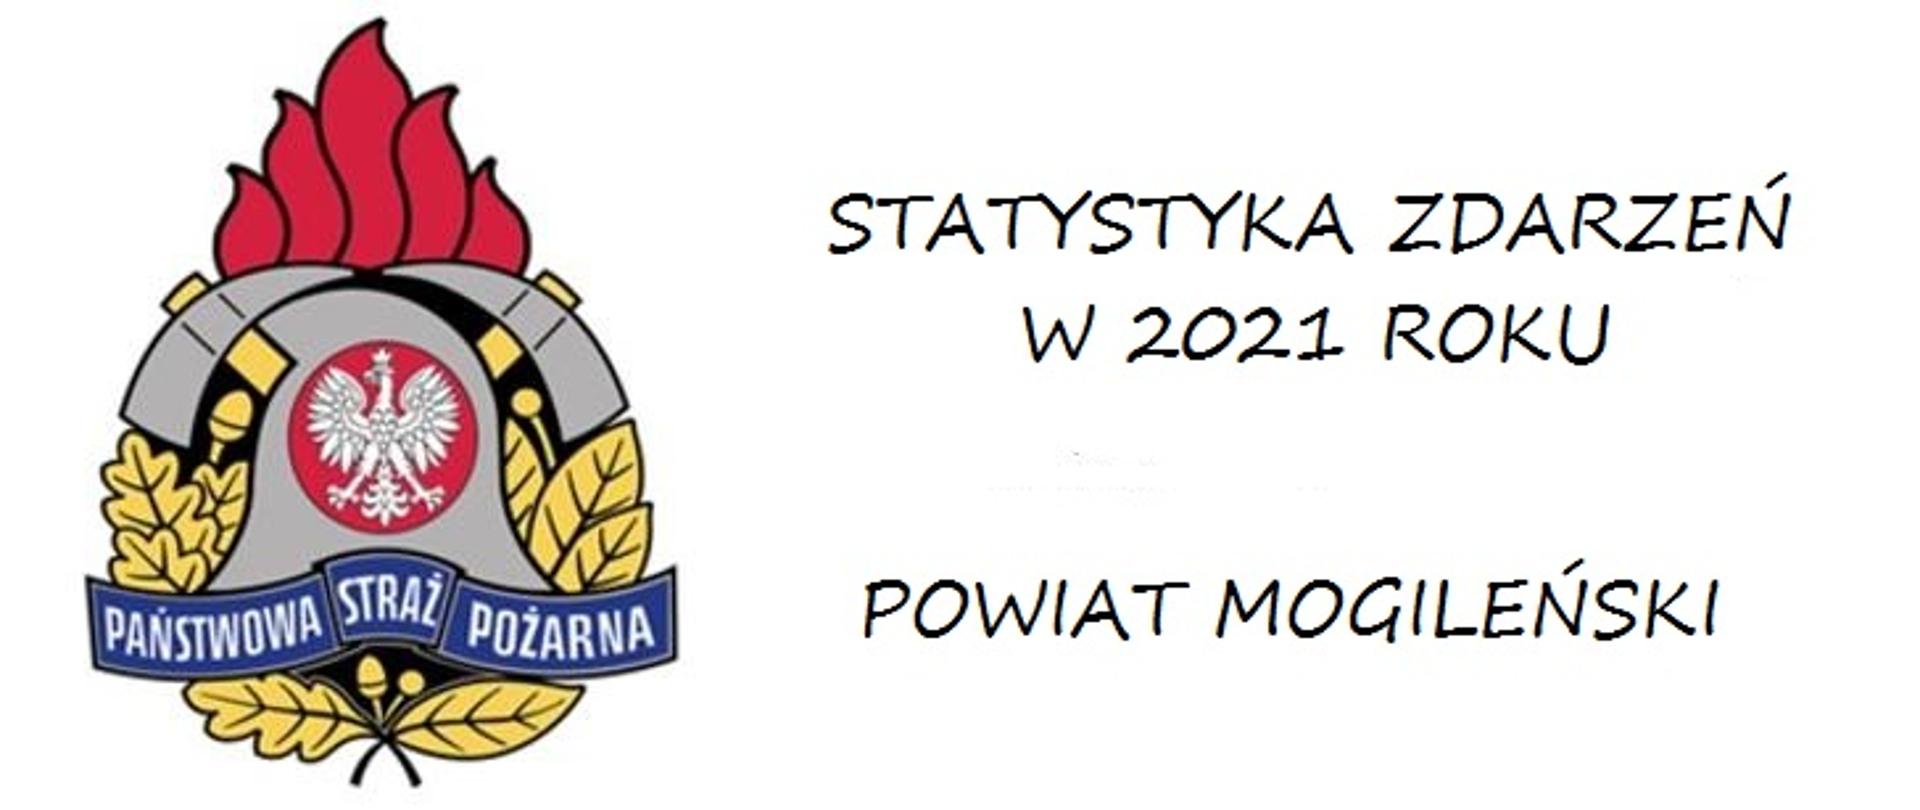 Czarny napis "Statystyka zdarzeń w 2021 roku, powiat mogileński" na białym tle, z lewej strony logo PSP